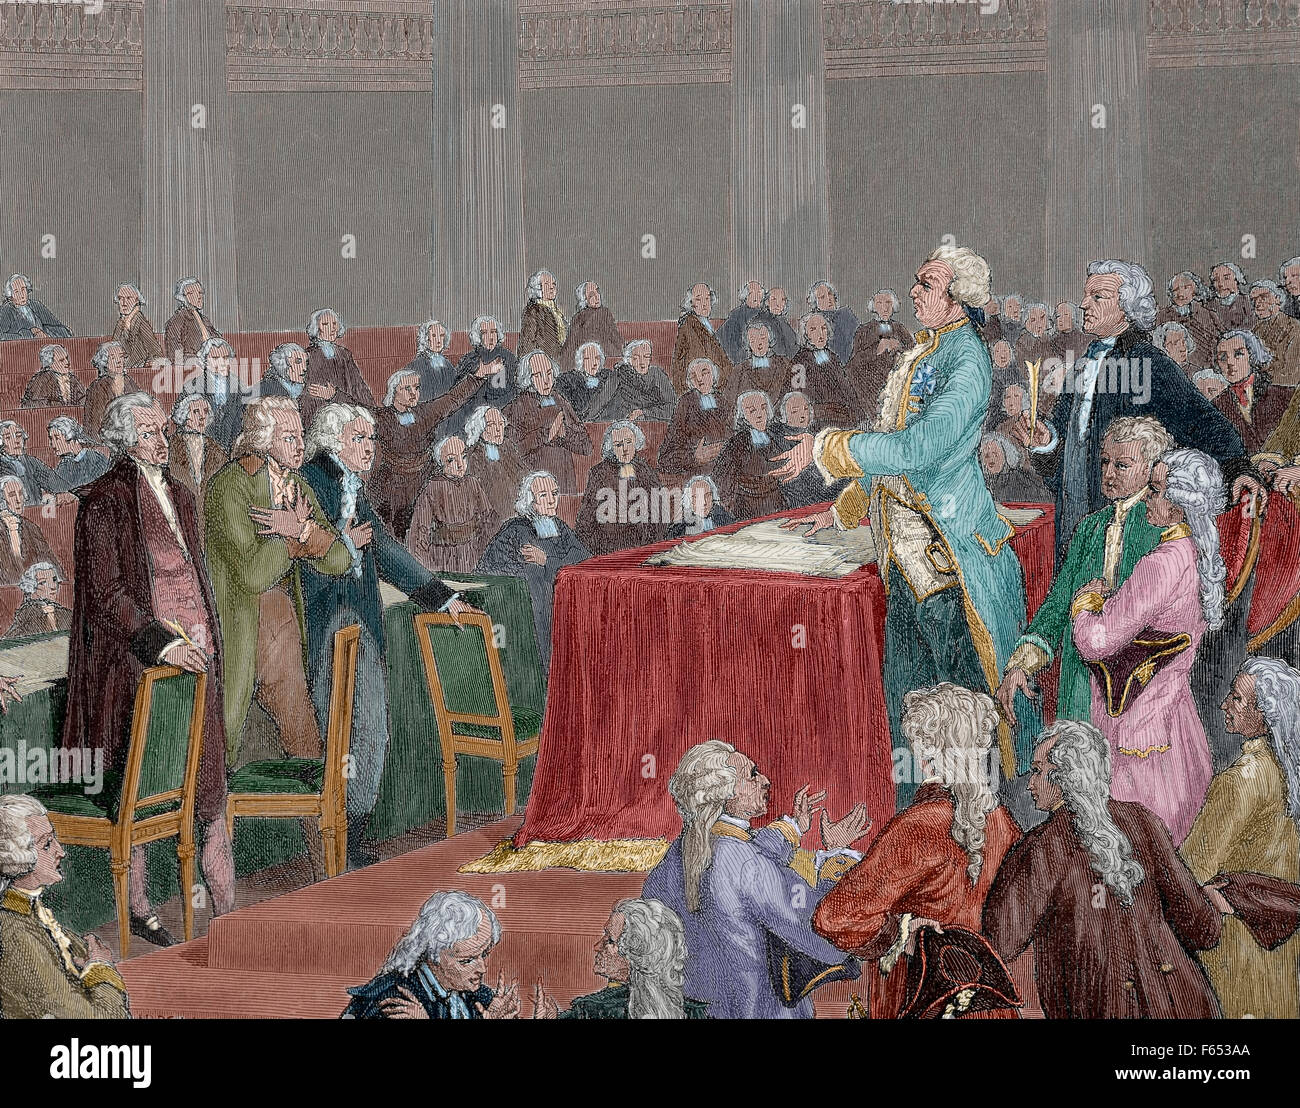 La Révolution française 1787-1799. Louis XVI a été forcé d'adopter la Constitution de 1791 par l'Assemblée nationale. Gravure par Meyer Heine, 1900. De couleur. Banque D'Images